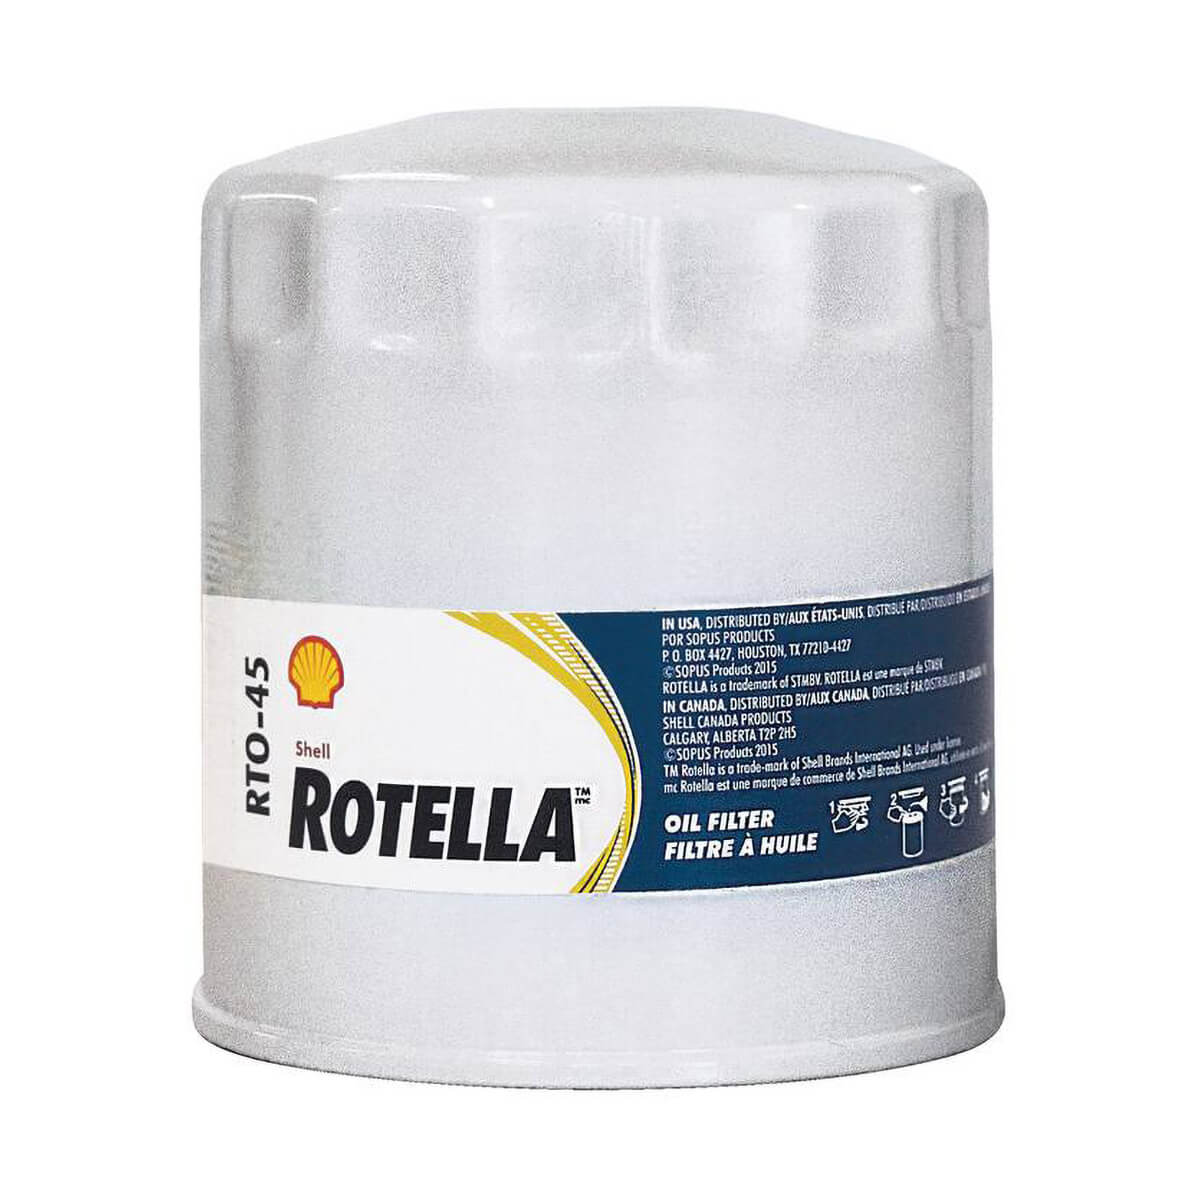 Shell Rotella RTO-45 Oil Filter